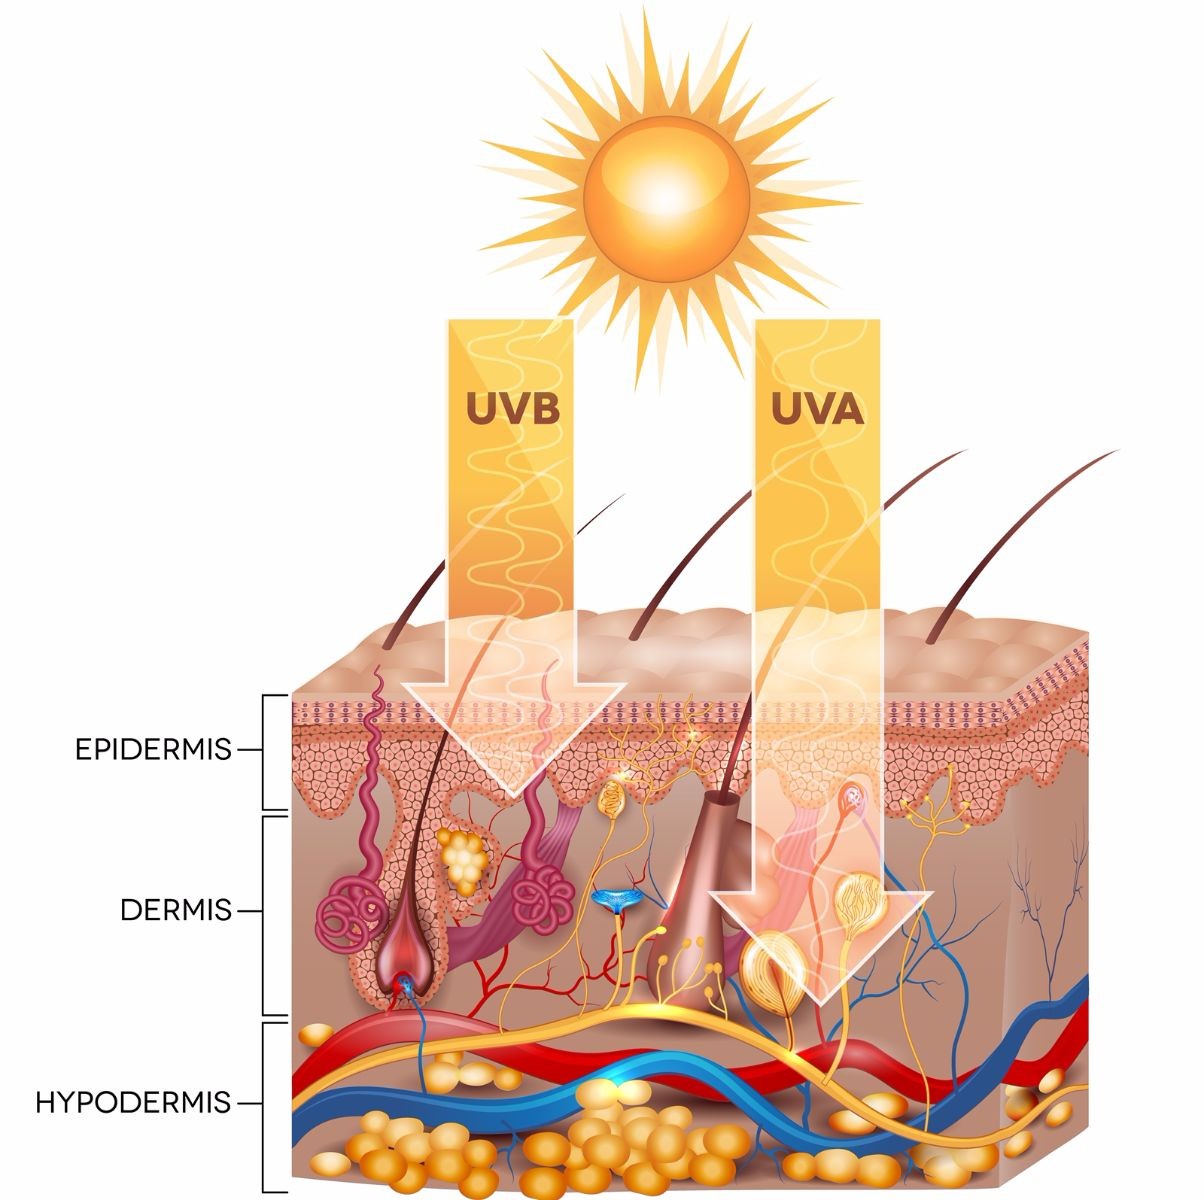 Ilustracipon de capas de la piel y rayos solares